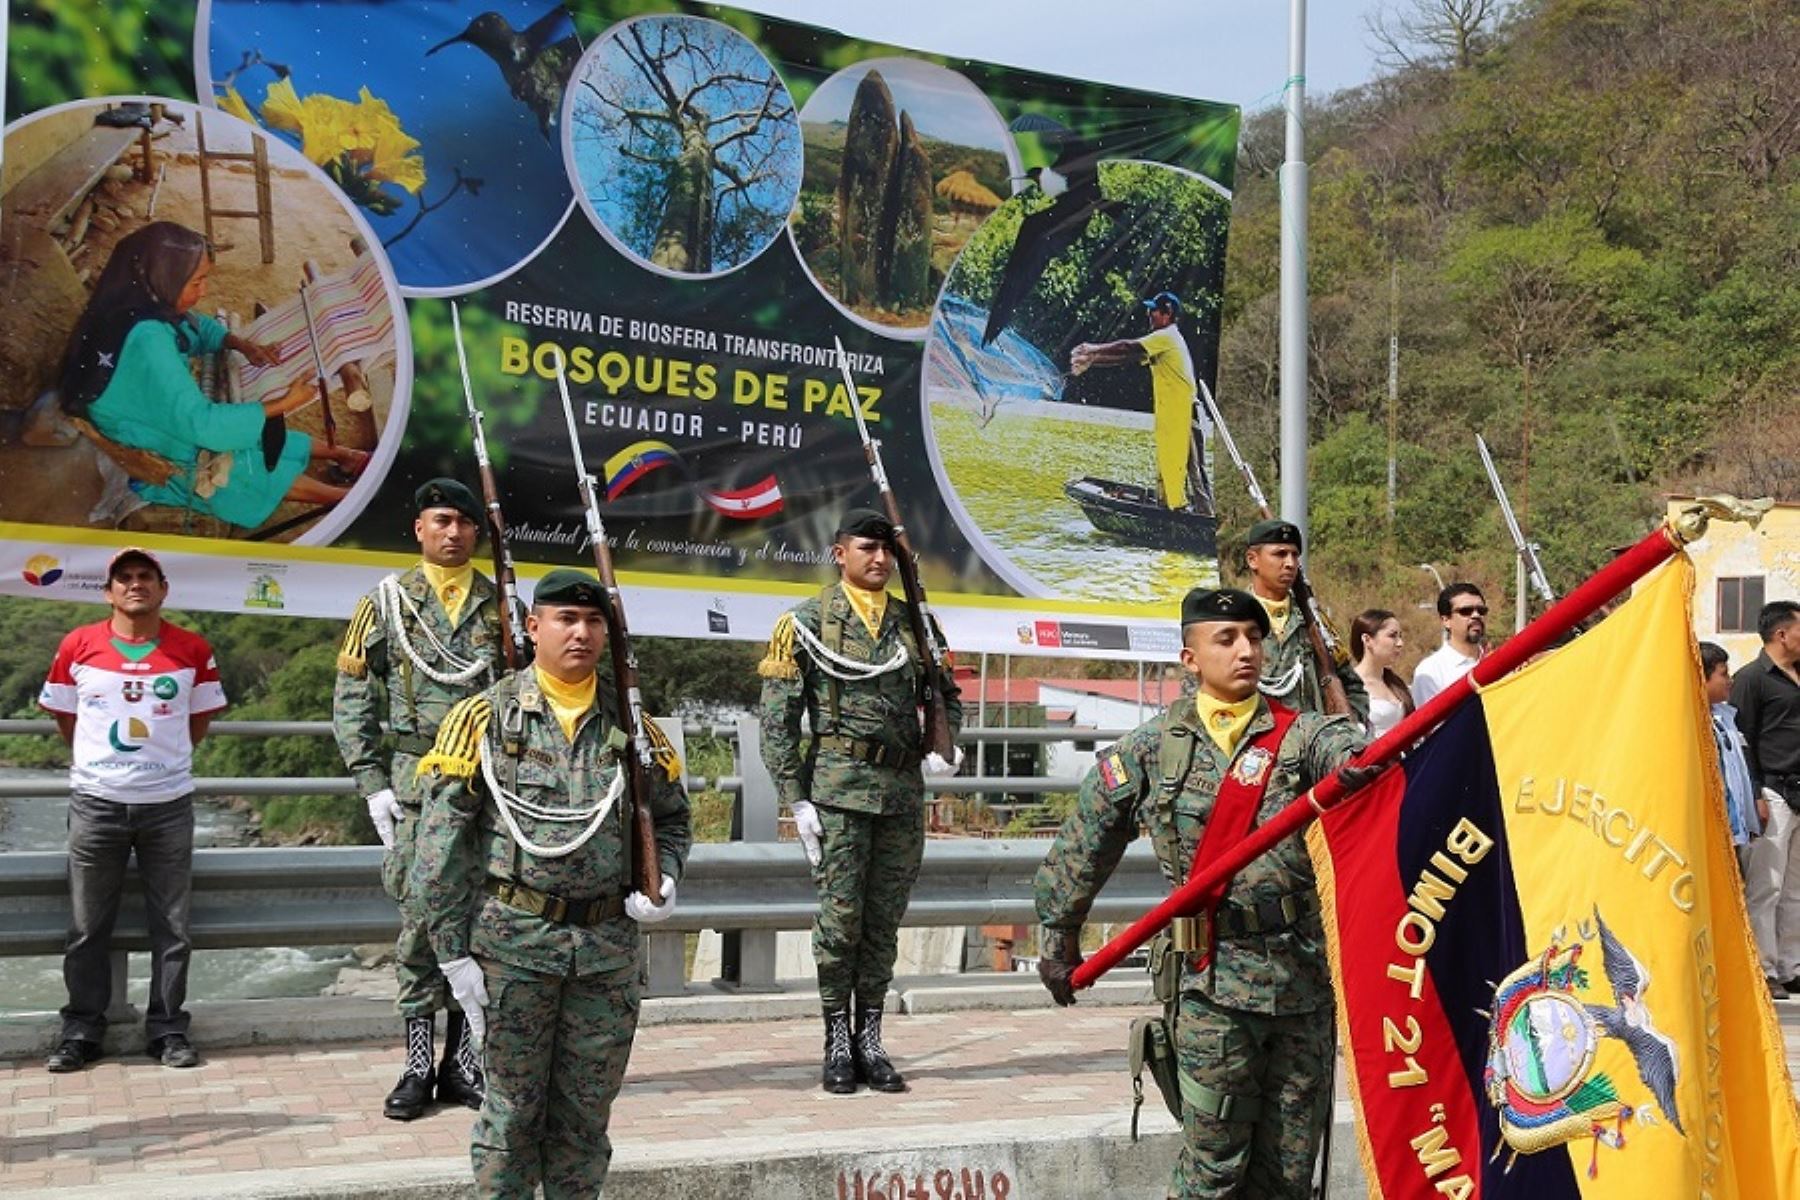 Perú y Ecuador se convirtieron en un referente de conservación de la diversidad biológica de América del Sur con el reconocimiento de la Reserva de Biosfera Transfronteriza Bosques de Paz, la primera de su clase en Sudamérica y que fue oficializada por los máximos representantes de los ministerios del Ambiente de ambos países.